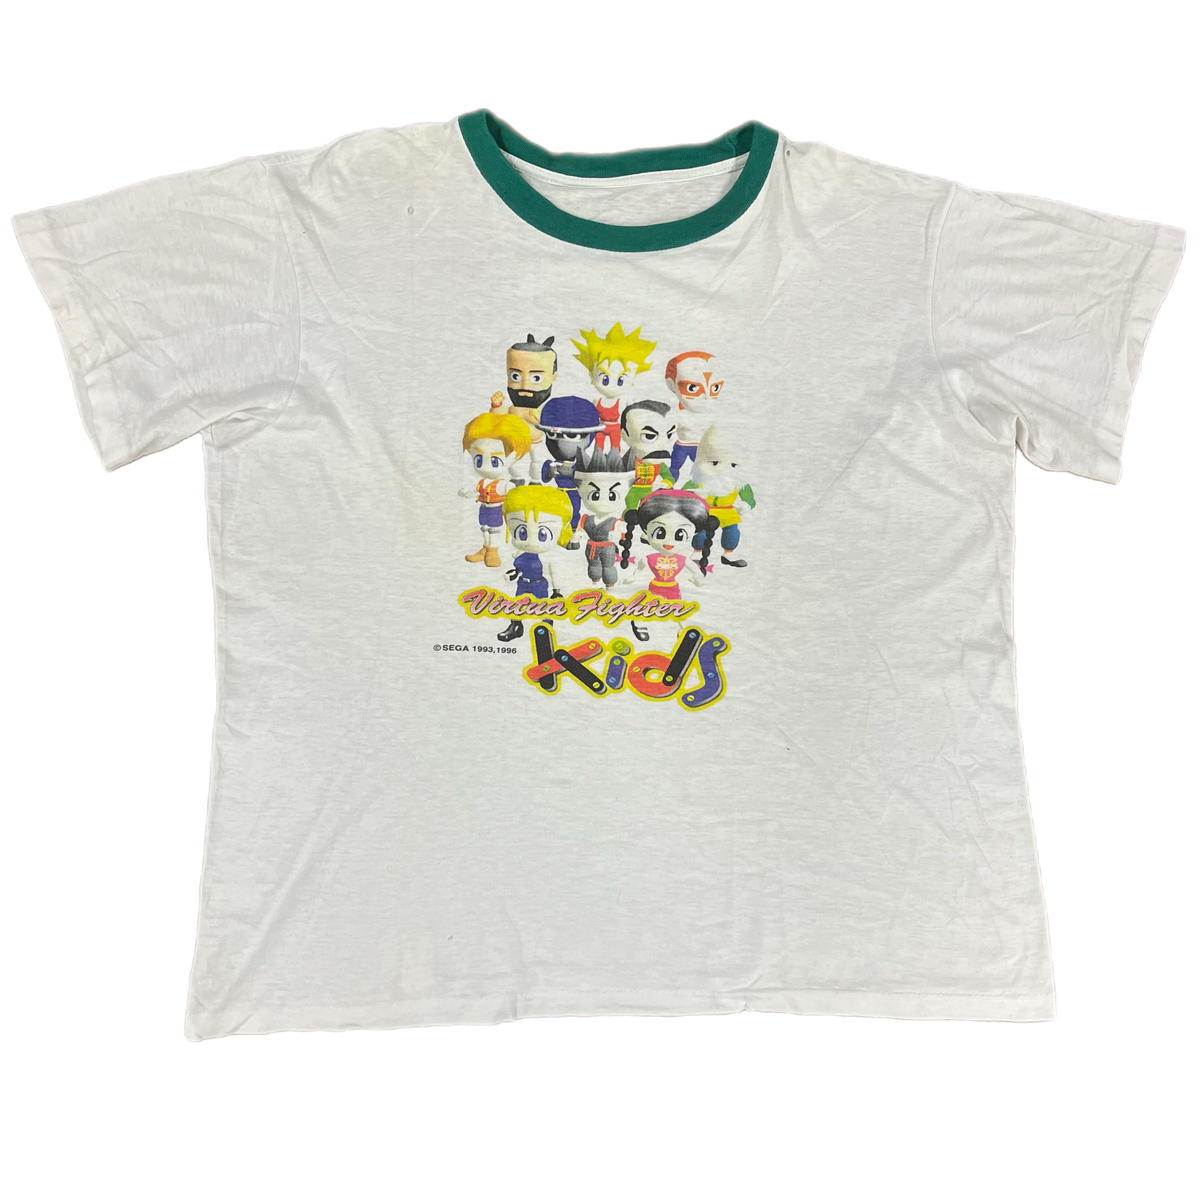 Vintage Virtua Fighter Kids &quot;SEGA 1996&quot; Promotional T-Shirt